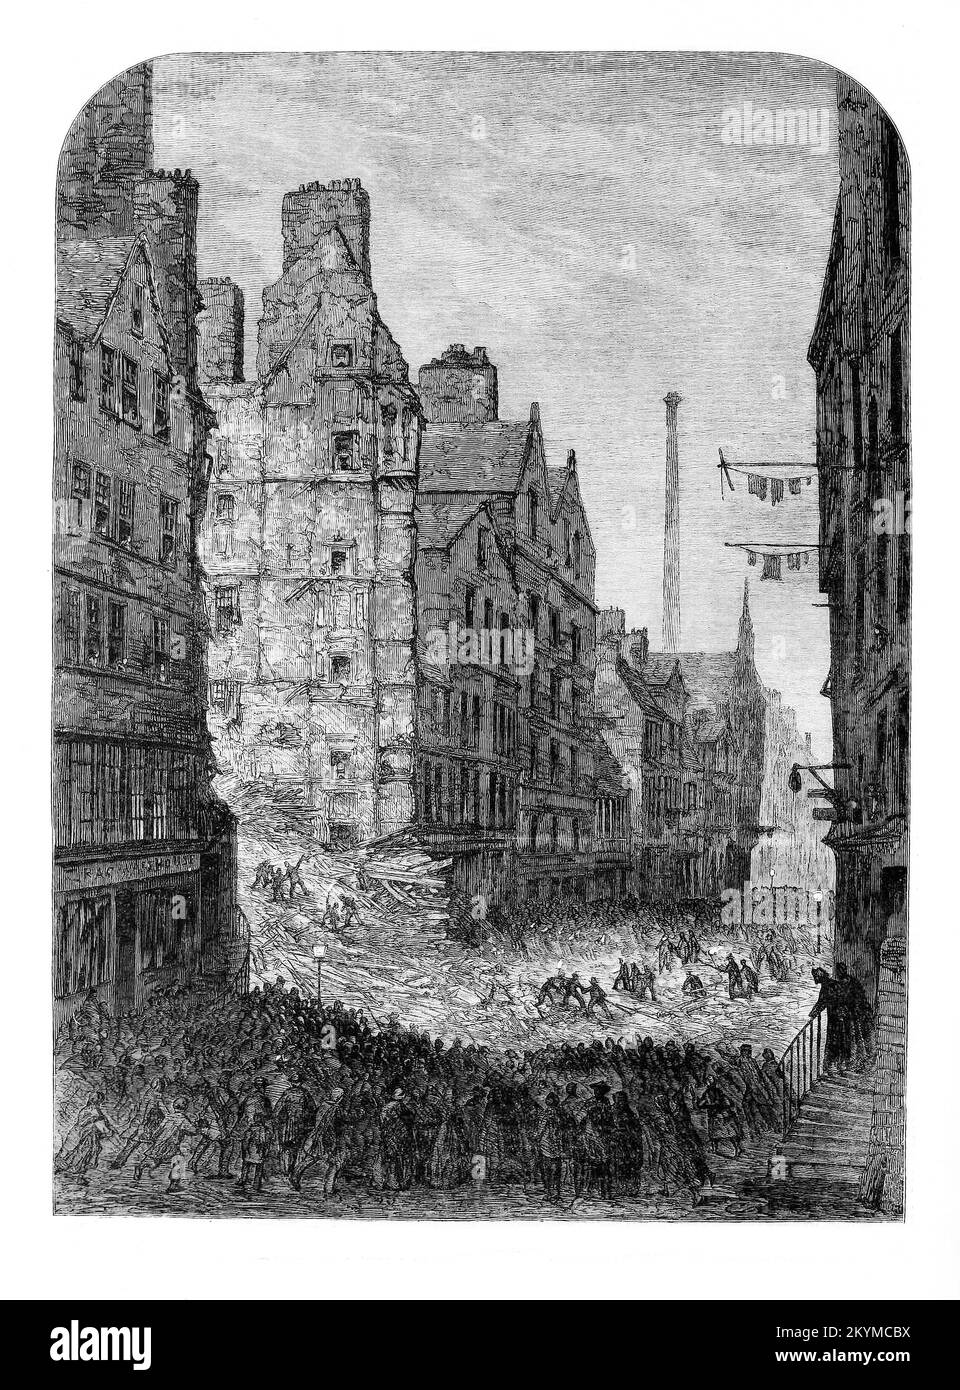 El colapso de un edificio de Edimburgo con pérdida de vidas en noviembre de 1861. De los 77 ocupantes, 35 perecieron o murieron en el hospital a causa de sus heridas. El edificio de siete pisos, de 250 años de antigüedad, estaba compuesto principalmente por madera, lo que derribó esa fatídica noche, y estaba situado en el corazón del casco antiguo de Edimburgo, densamente poblado, en el lado norte de la calle High Street. La Ley de Mejora de la Ciudad se aprobó en 1867, Y a finales del siglo 19th gran parte de la vivienda medieval de la Ciudad Vieja había desaparecido. Foto de stock